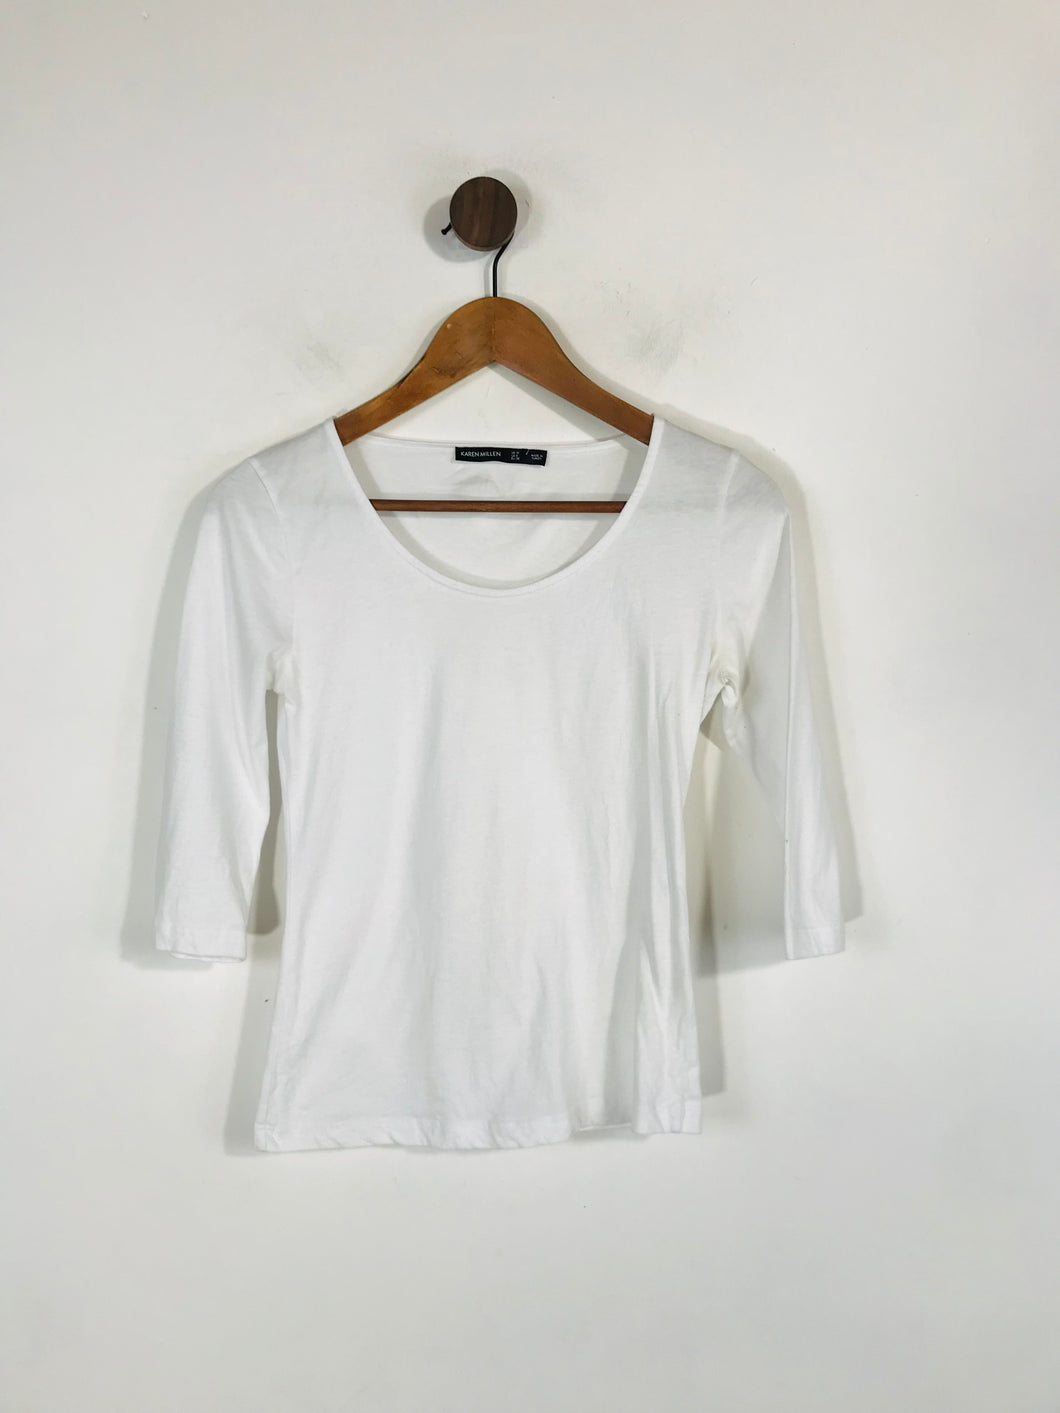 Karen Millen Women's Three Quarter Length Sleeve T-Shirt | UK10 | White